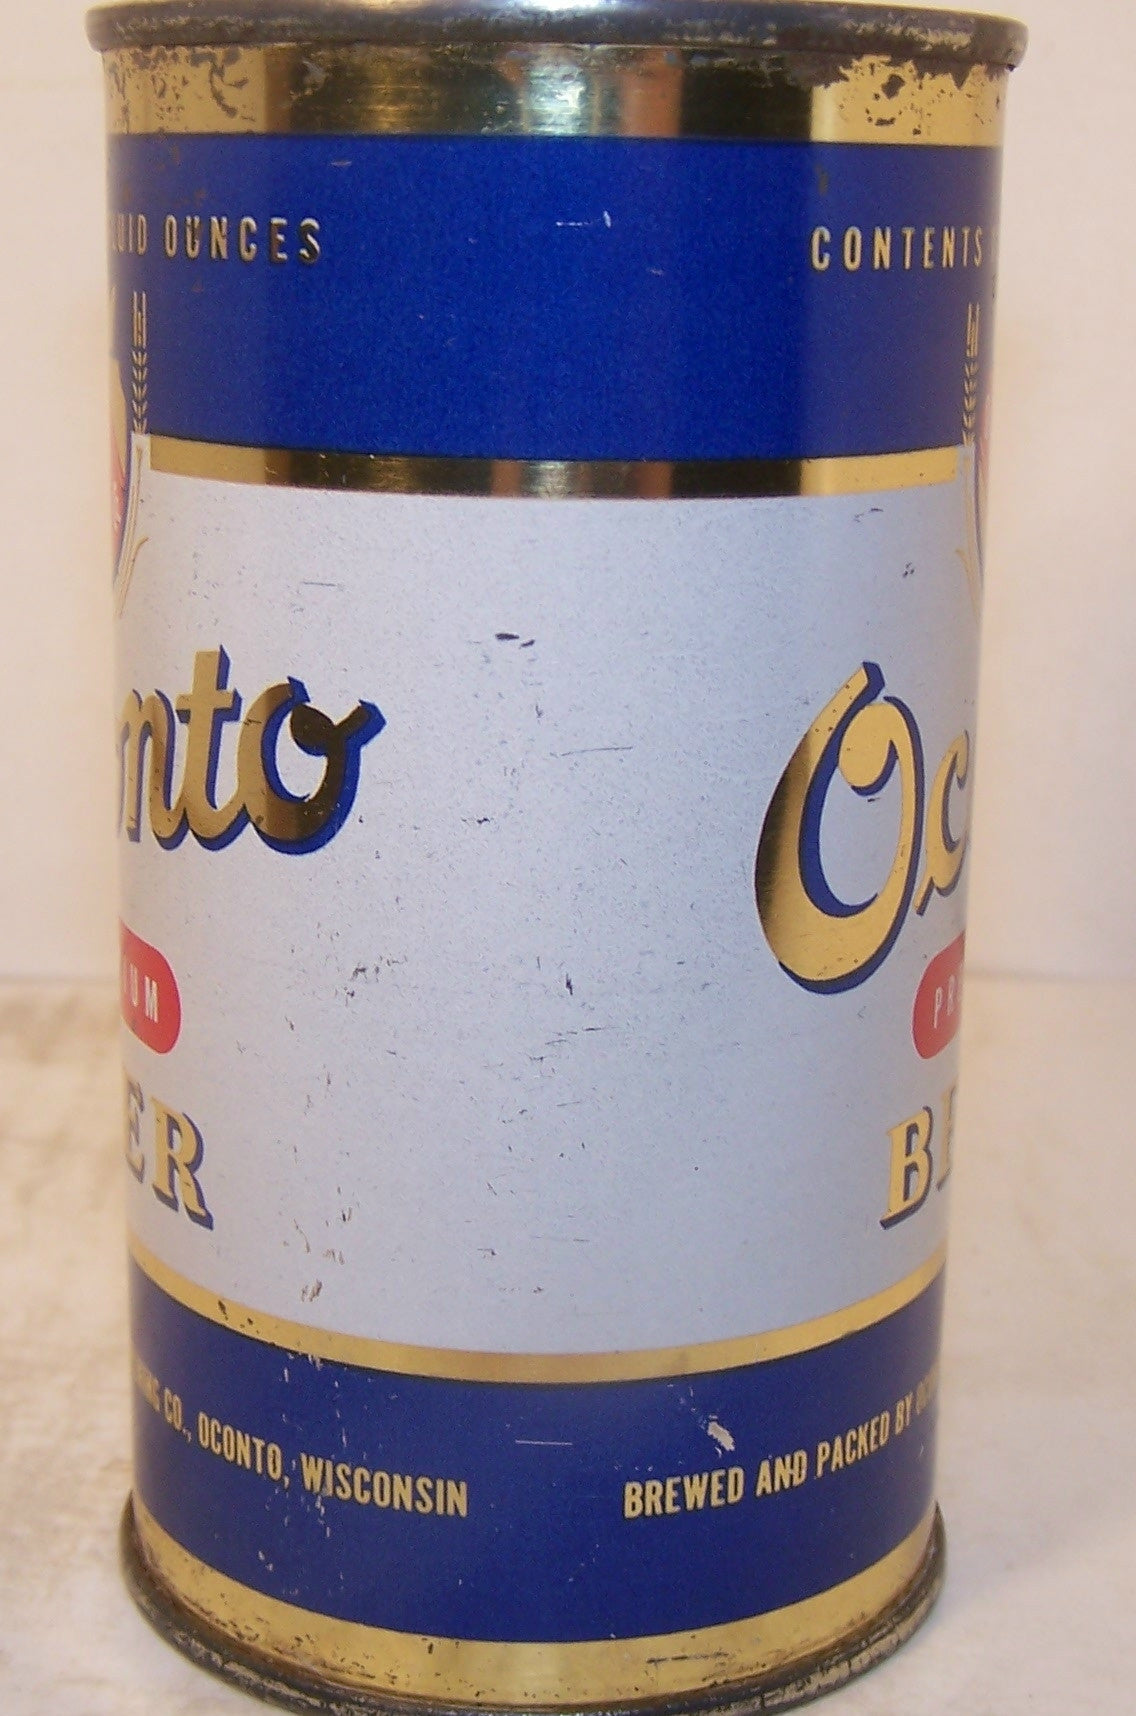 Oconto Premium Beer, USBC 104-1, Grade 1 Sold 12/8/14